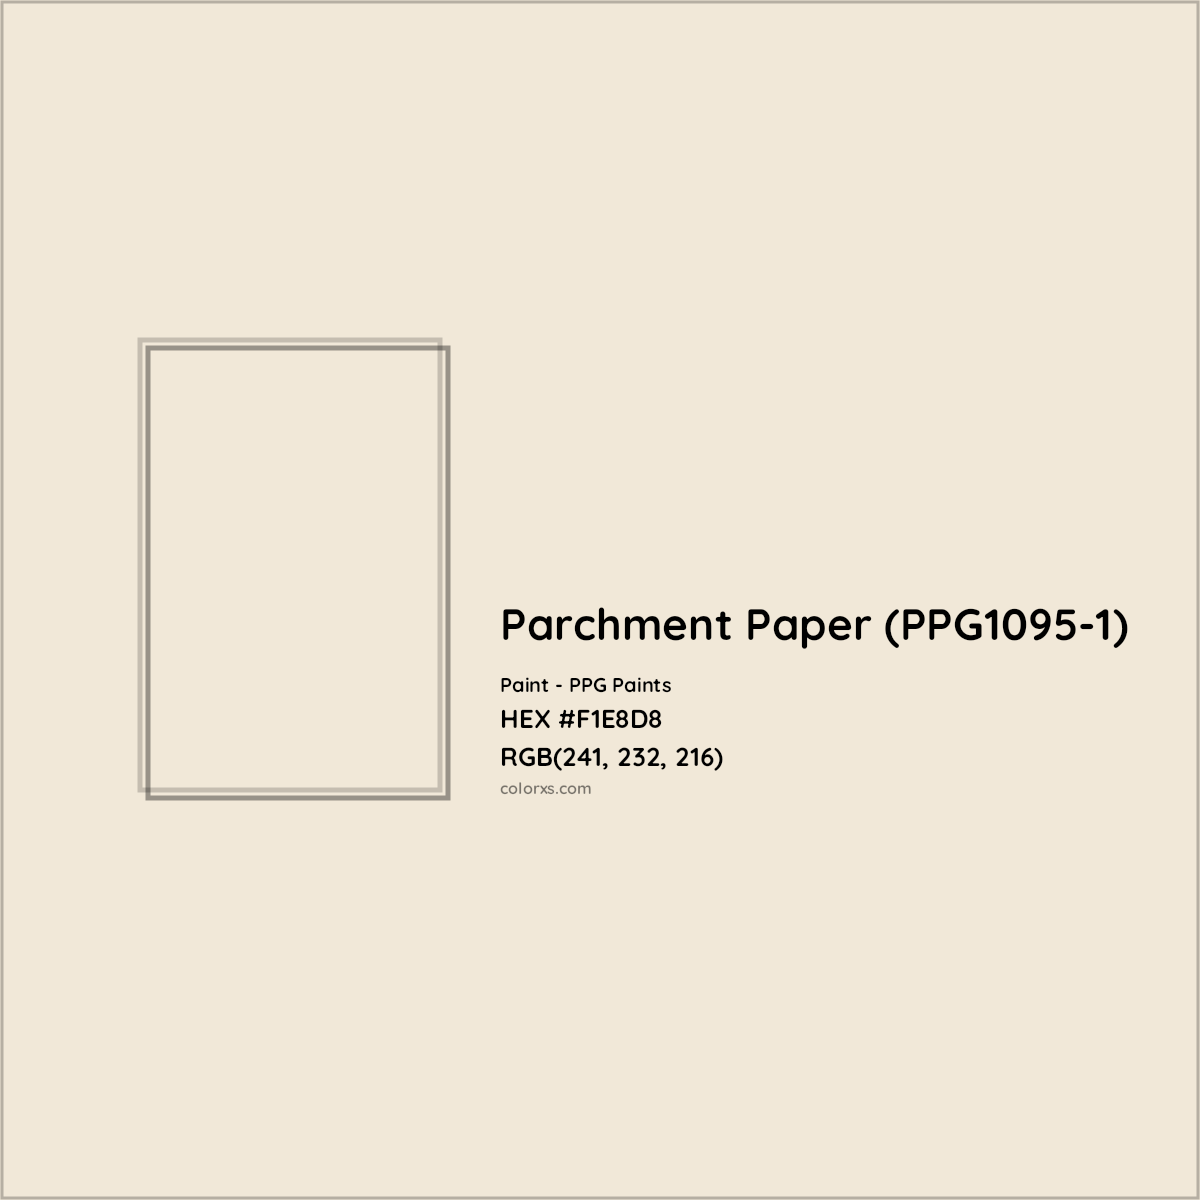 HEX #F1E8D8 Parchment Paper (PPG1095-1) Paint PPG Paints - Color Code